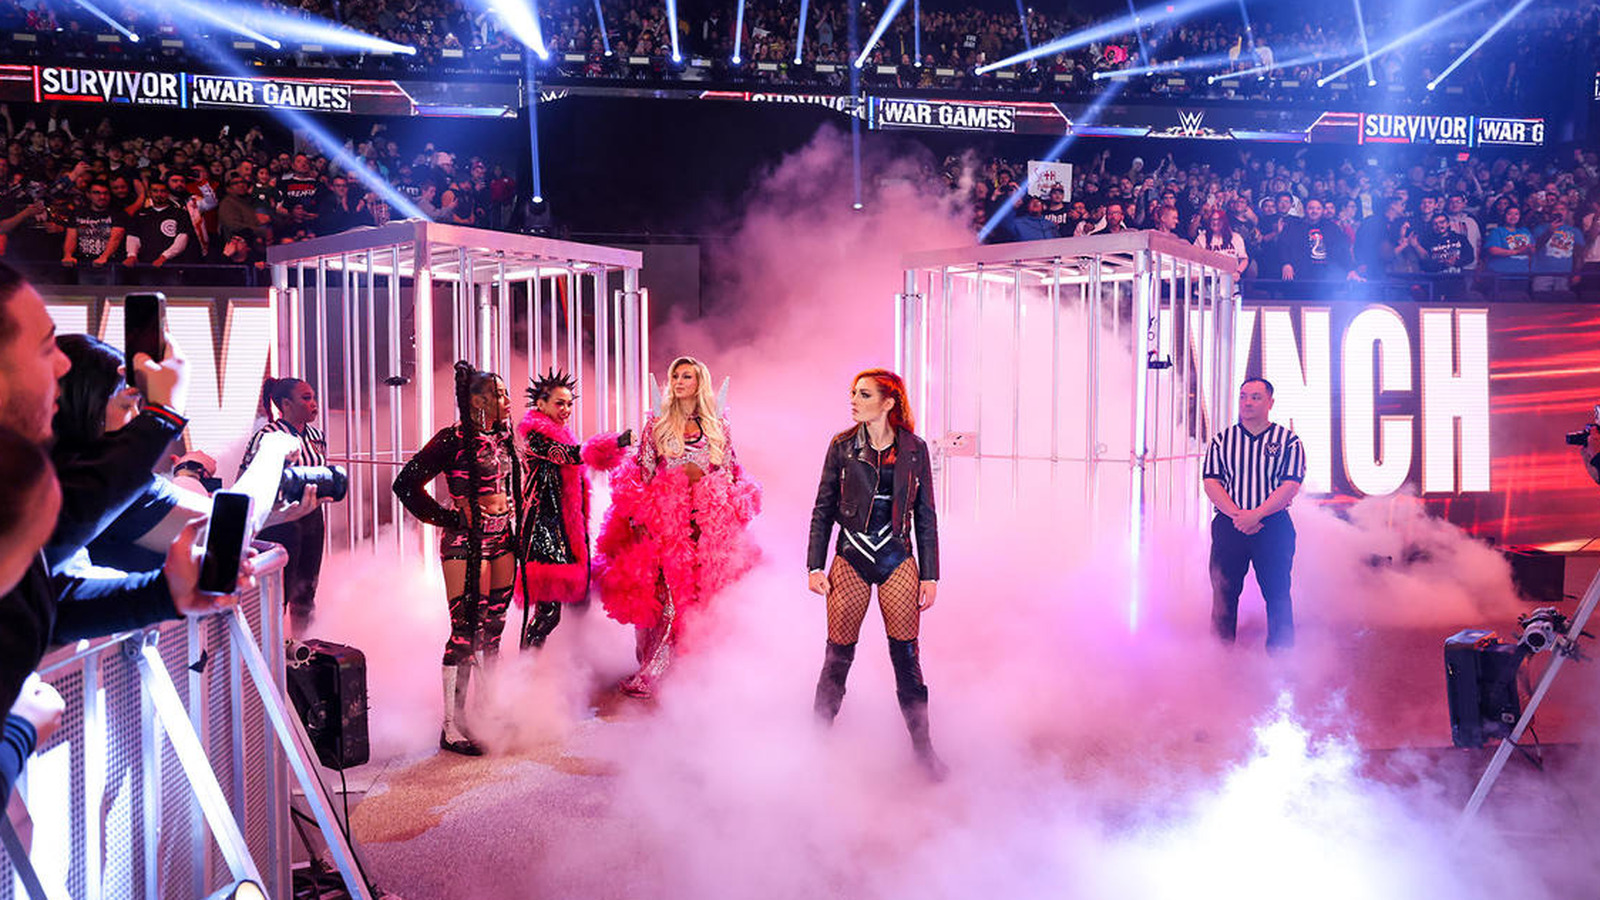 Por qué Freddie Prinze Jr. dice que WarGames de la serie femenina de Survivor Series de la WWE fue "difícil de seguir"